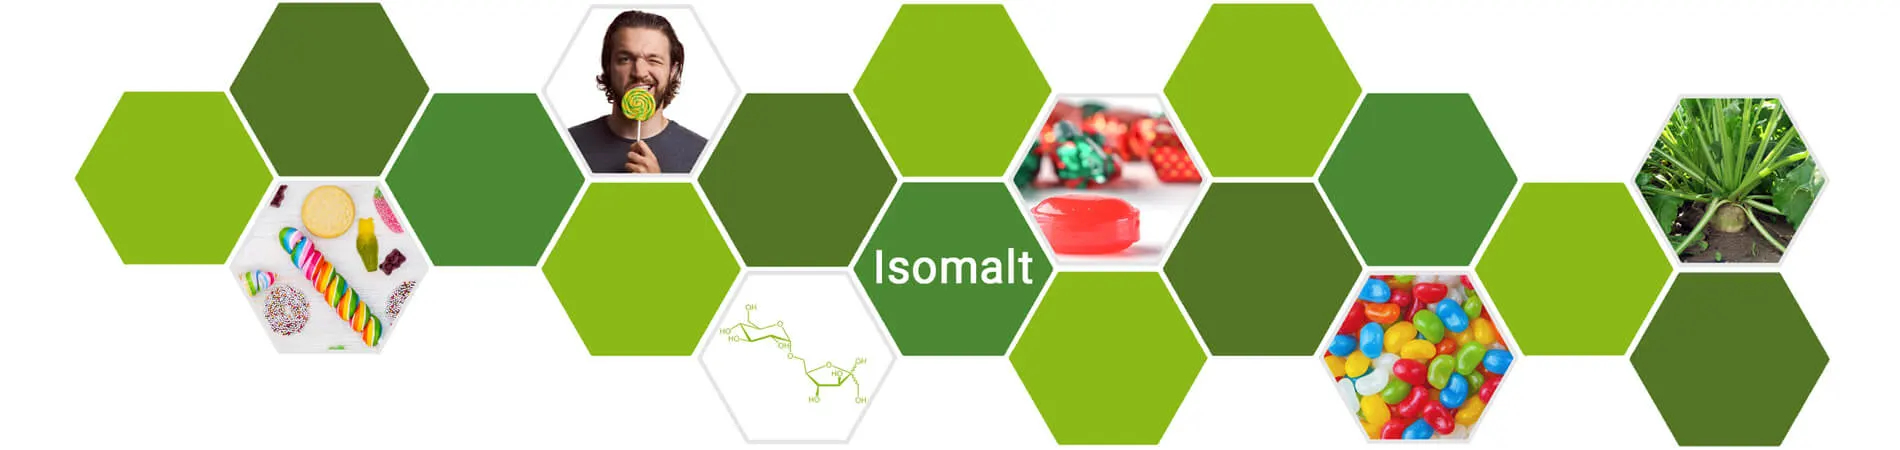 Qu'est-ce que l'Isomalt ? L'Isomalt est un...